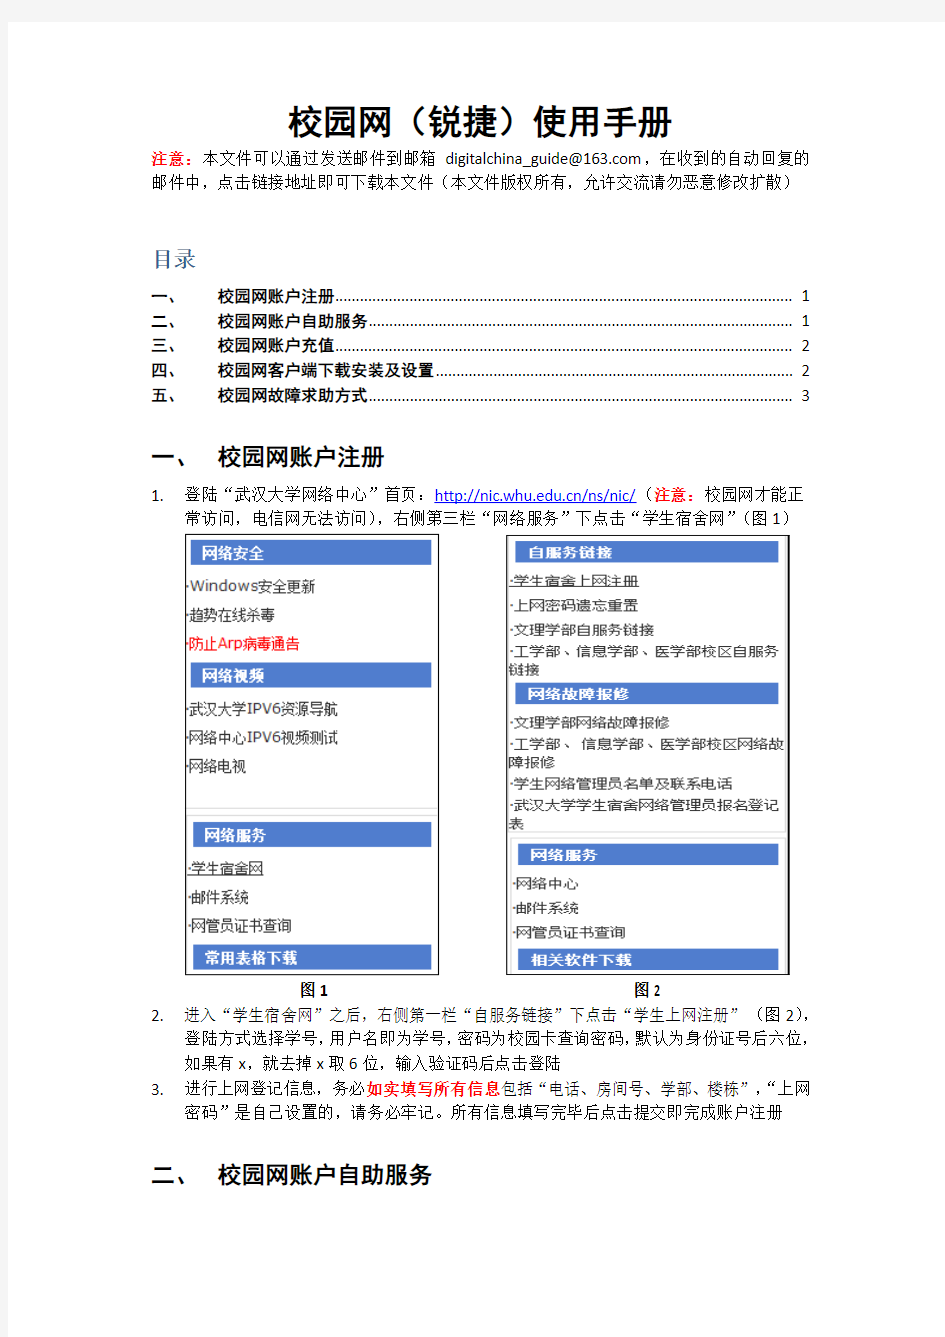 武汉大学校园网(锐捷)新生安装使用说明1.0